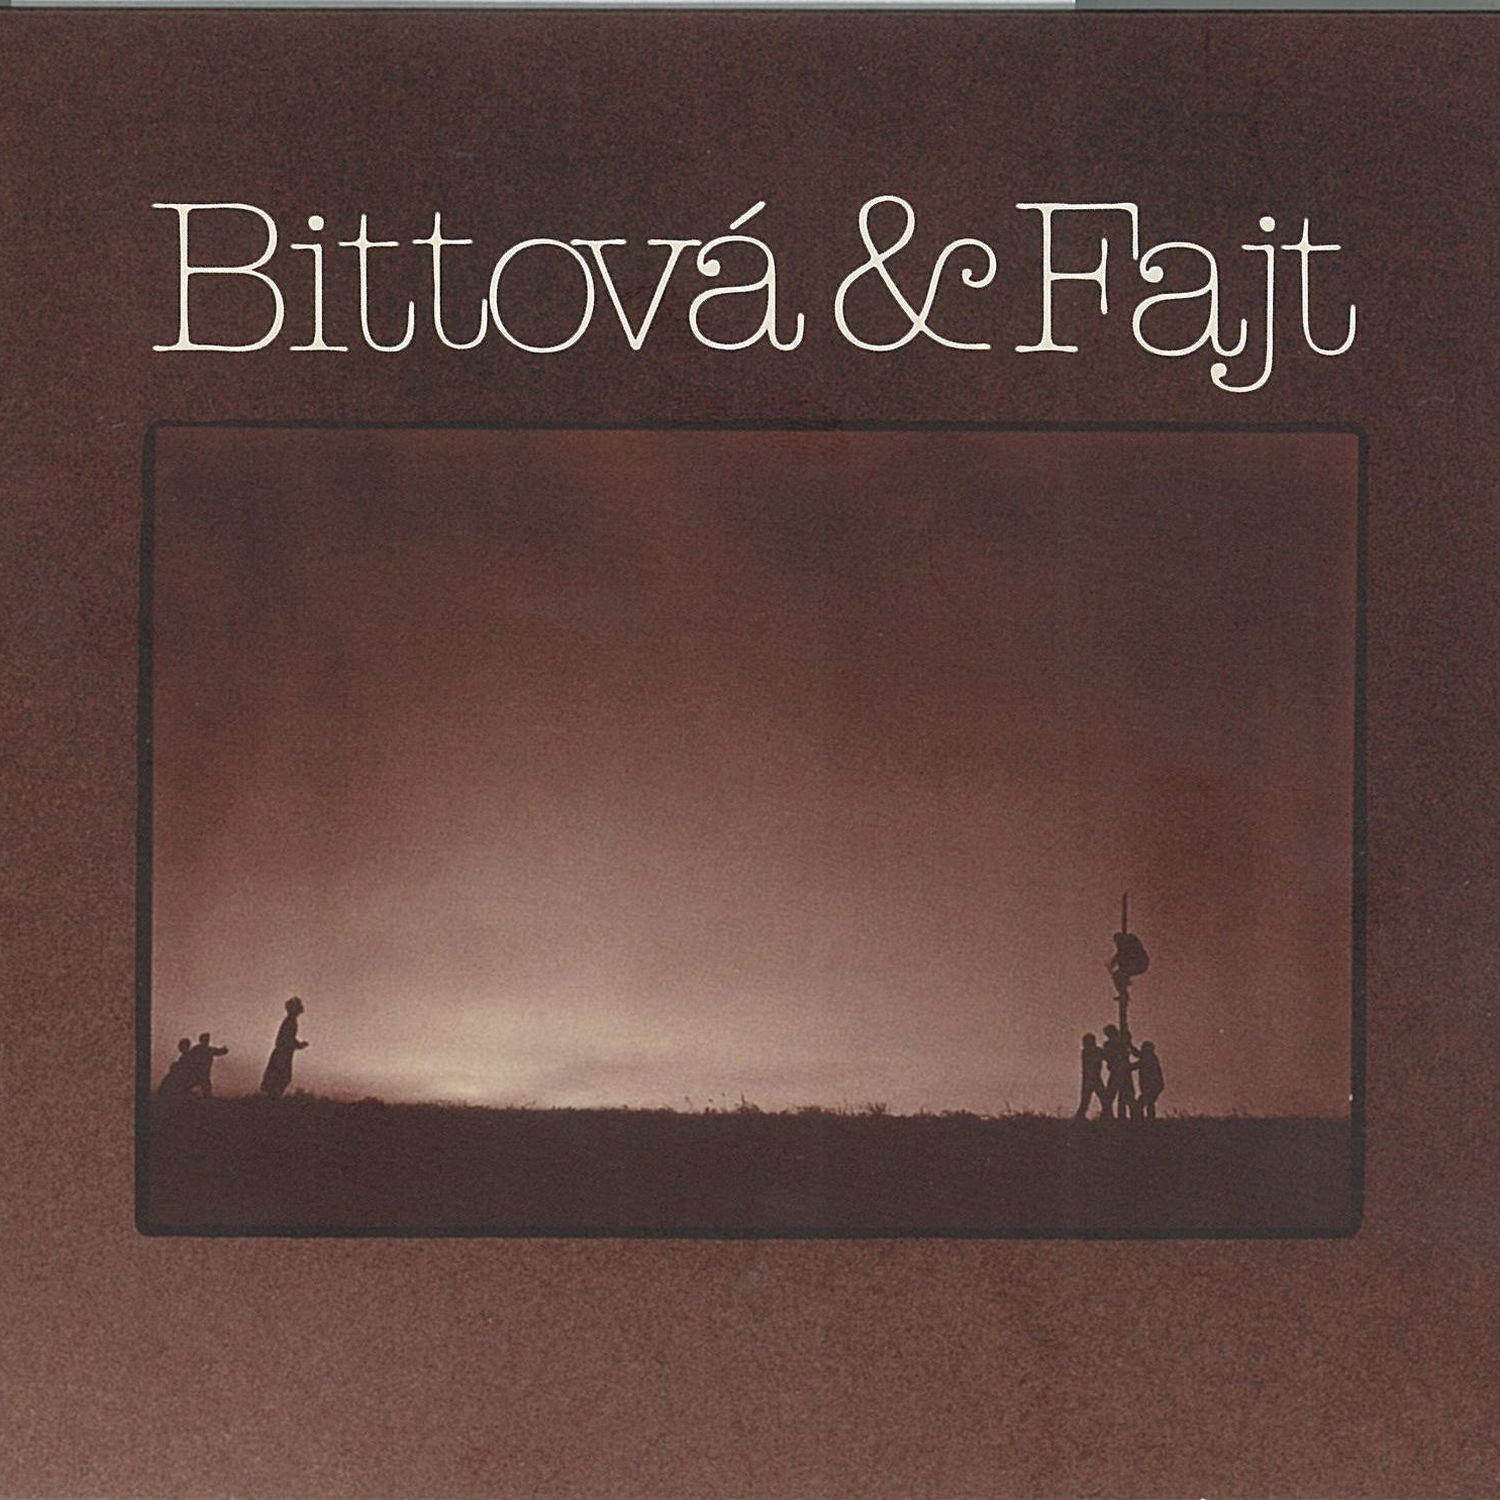 CD Shop - BITTOVA IVA, FAJT PAVEL BITTOVA & FAJT